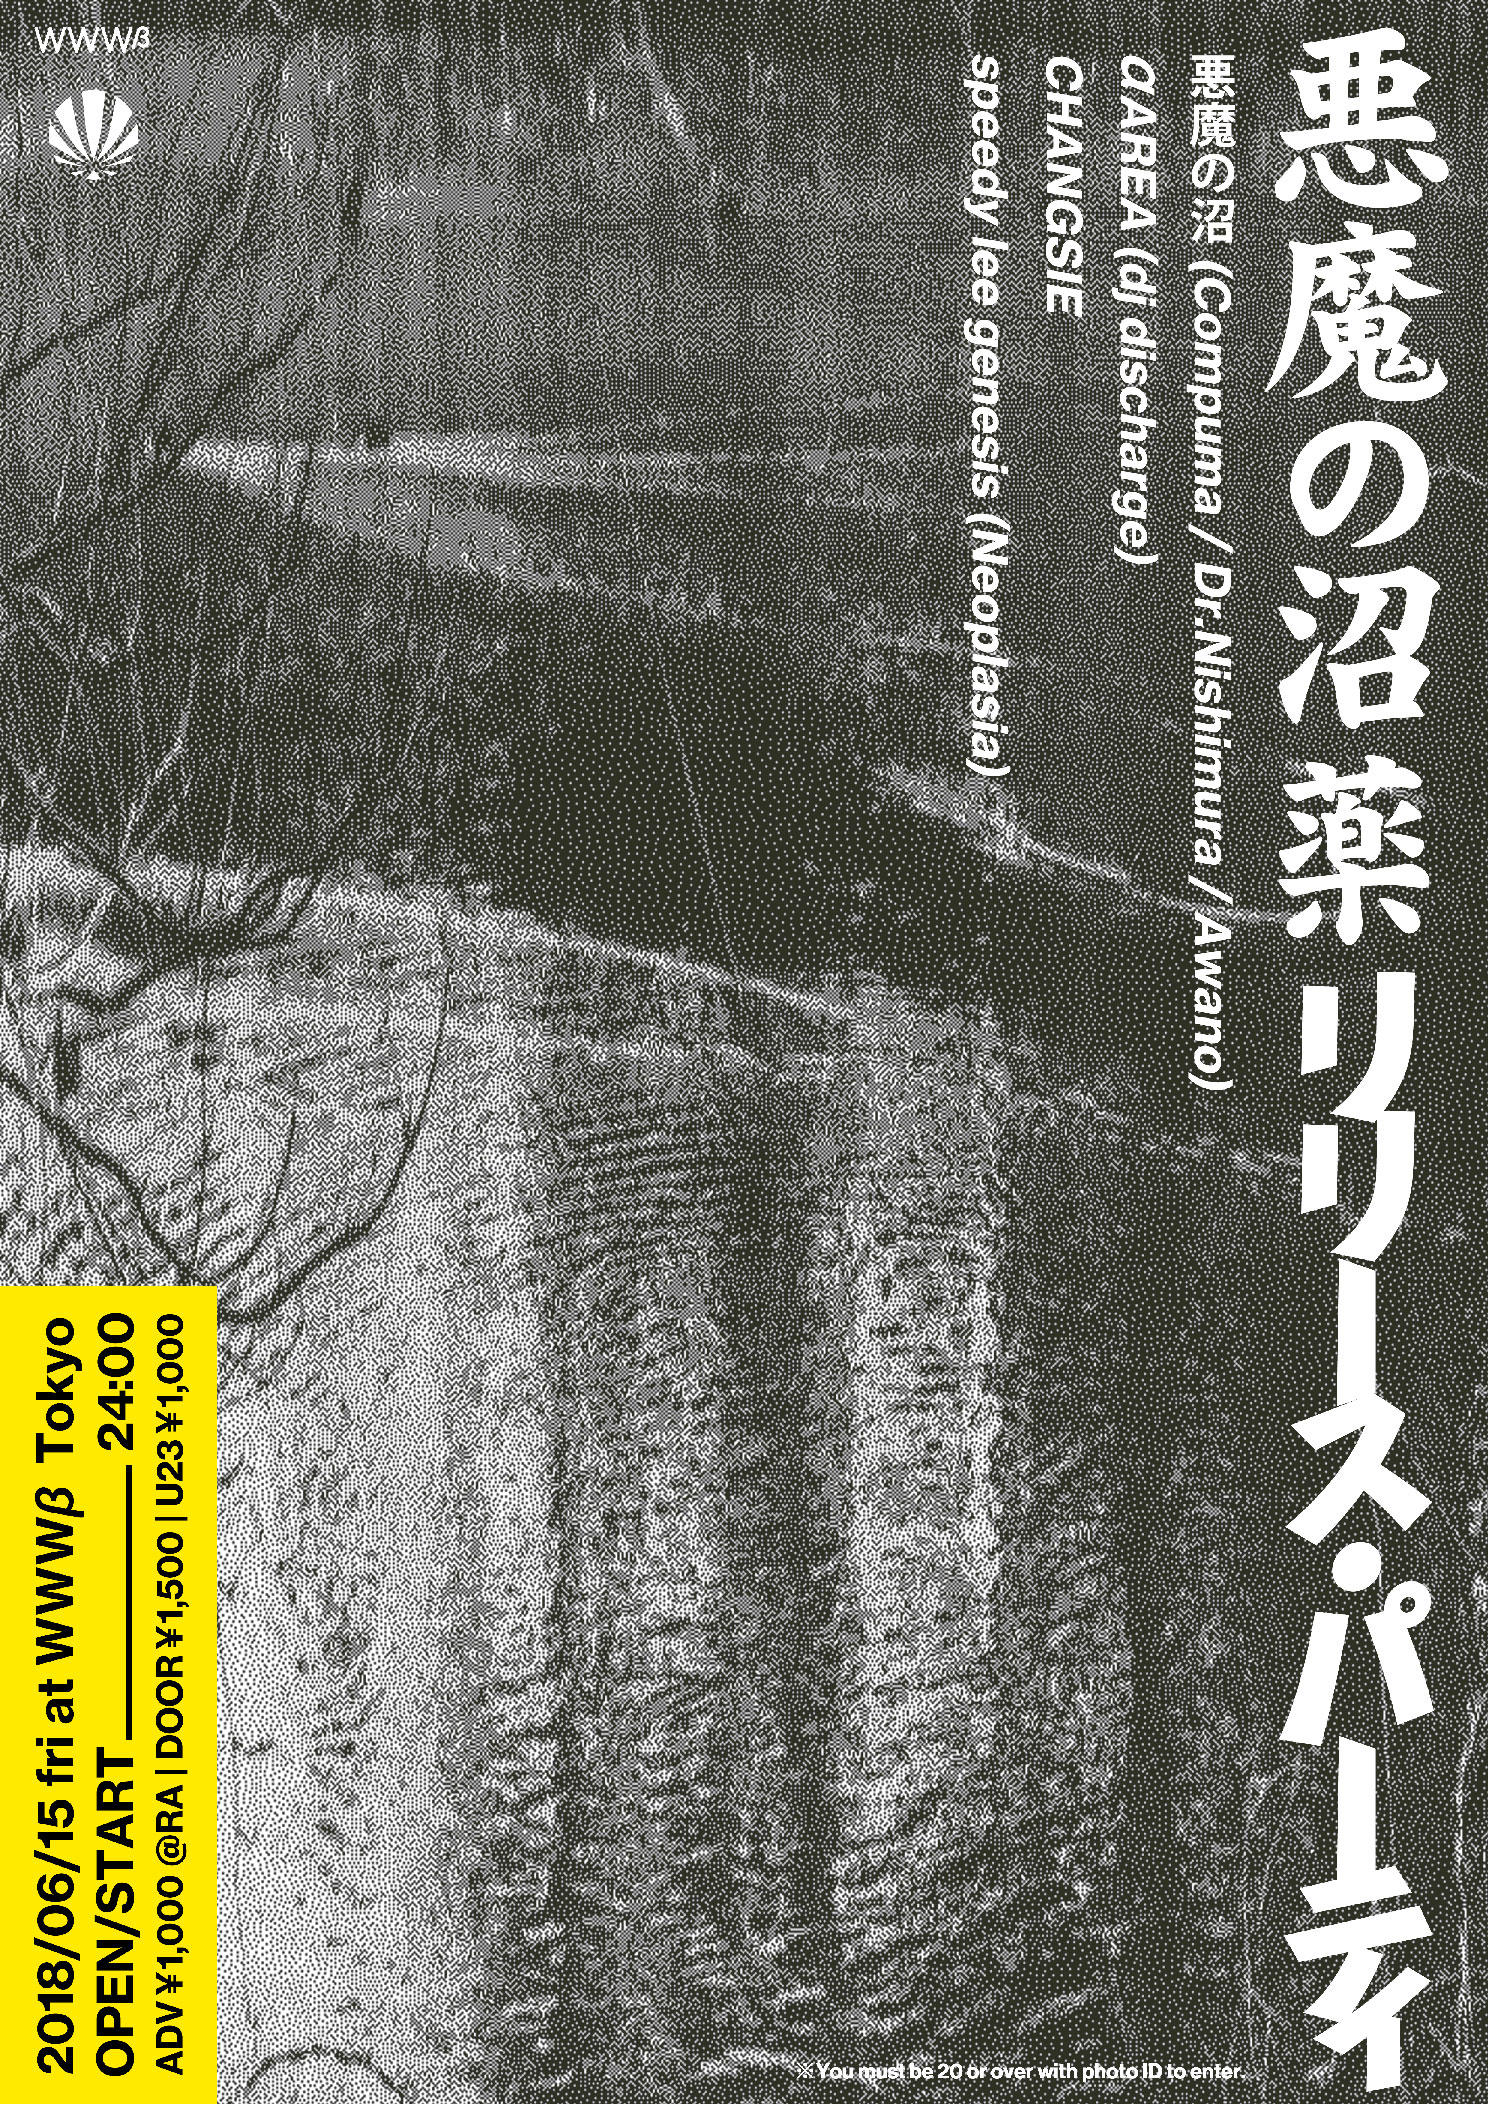 悪魔の沼 (Compuma / Dr.Nishimura / Awano) / αAREA (dj discharge) / CHANGSIE / speedy lee genesis 